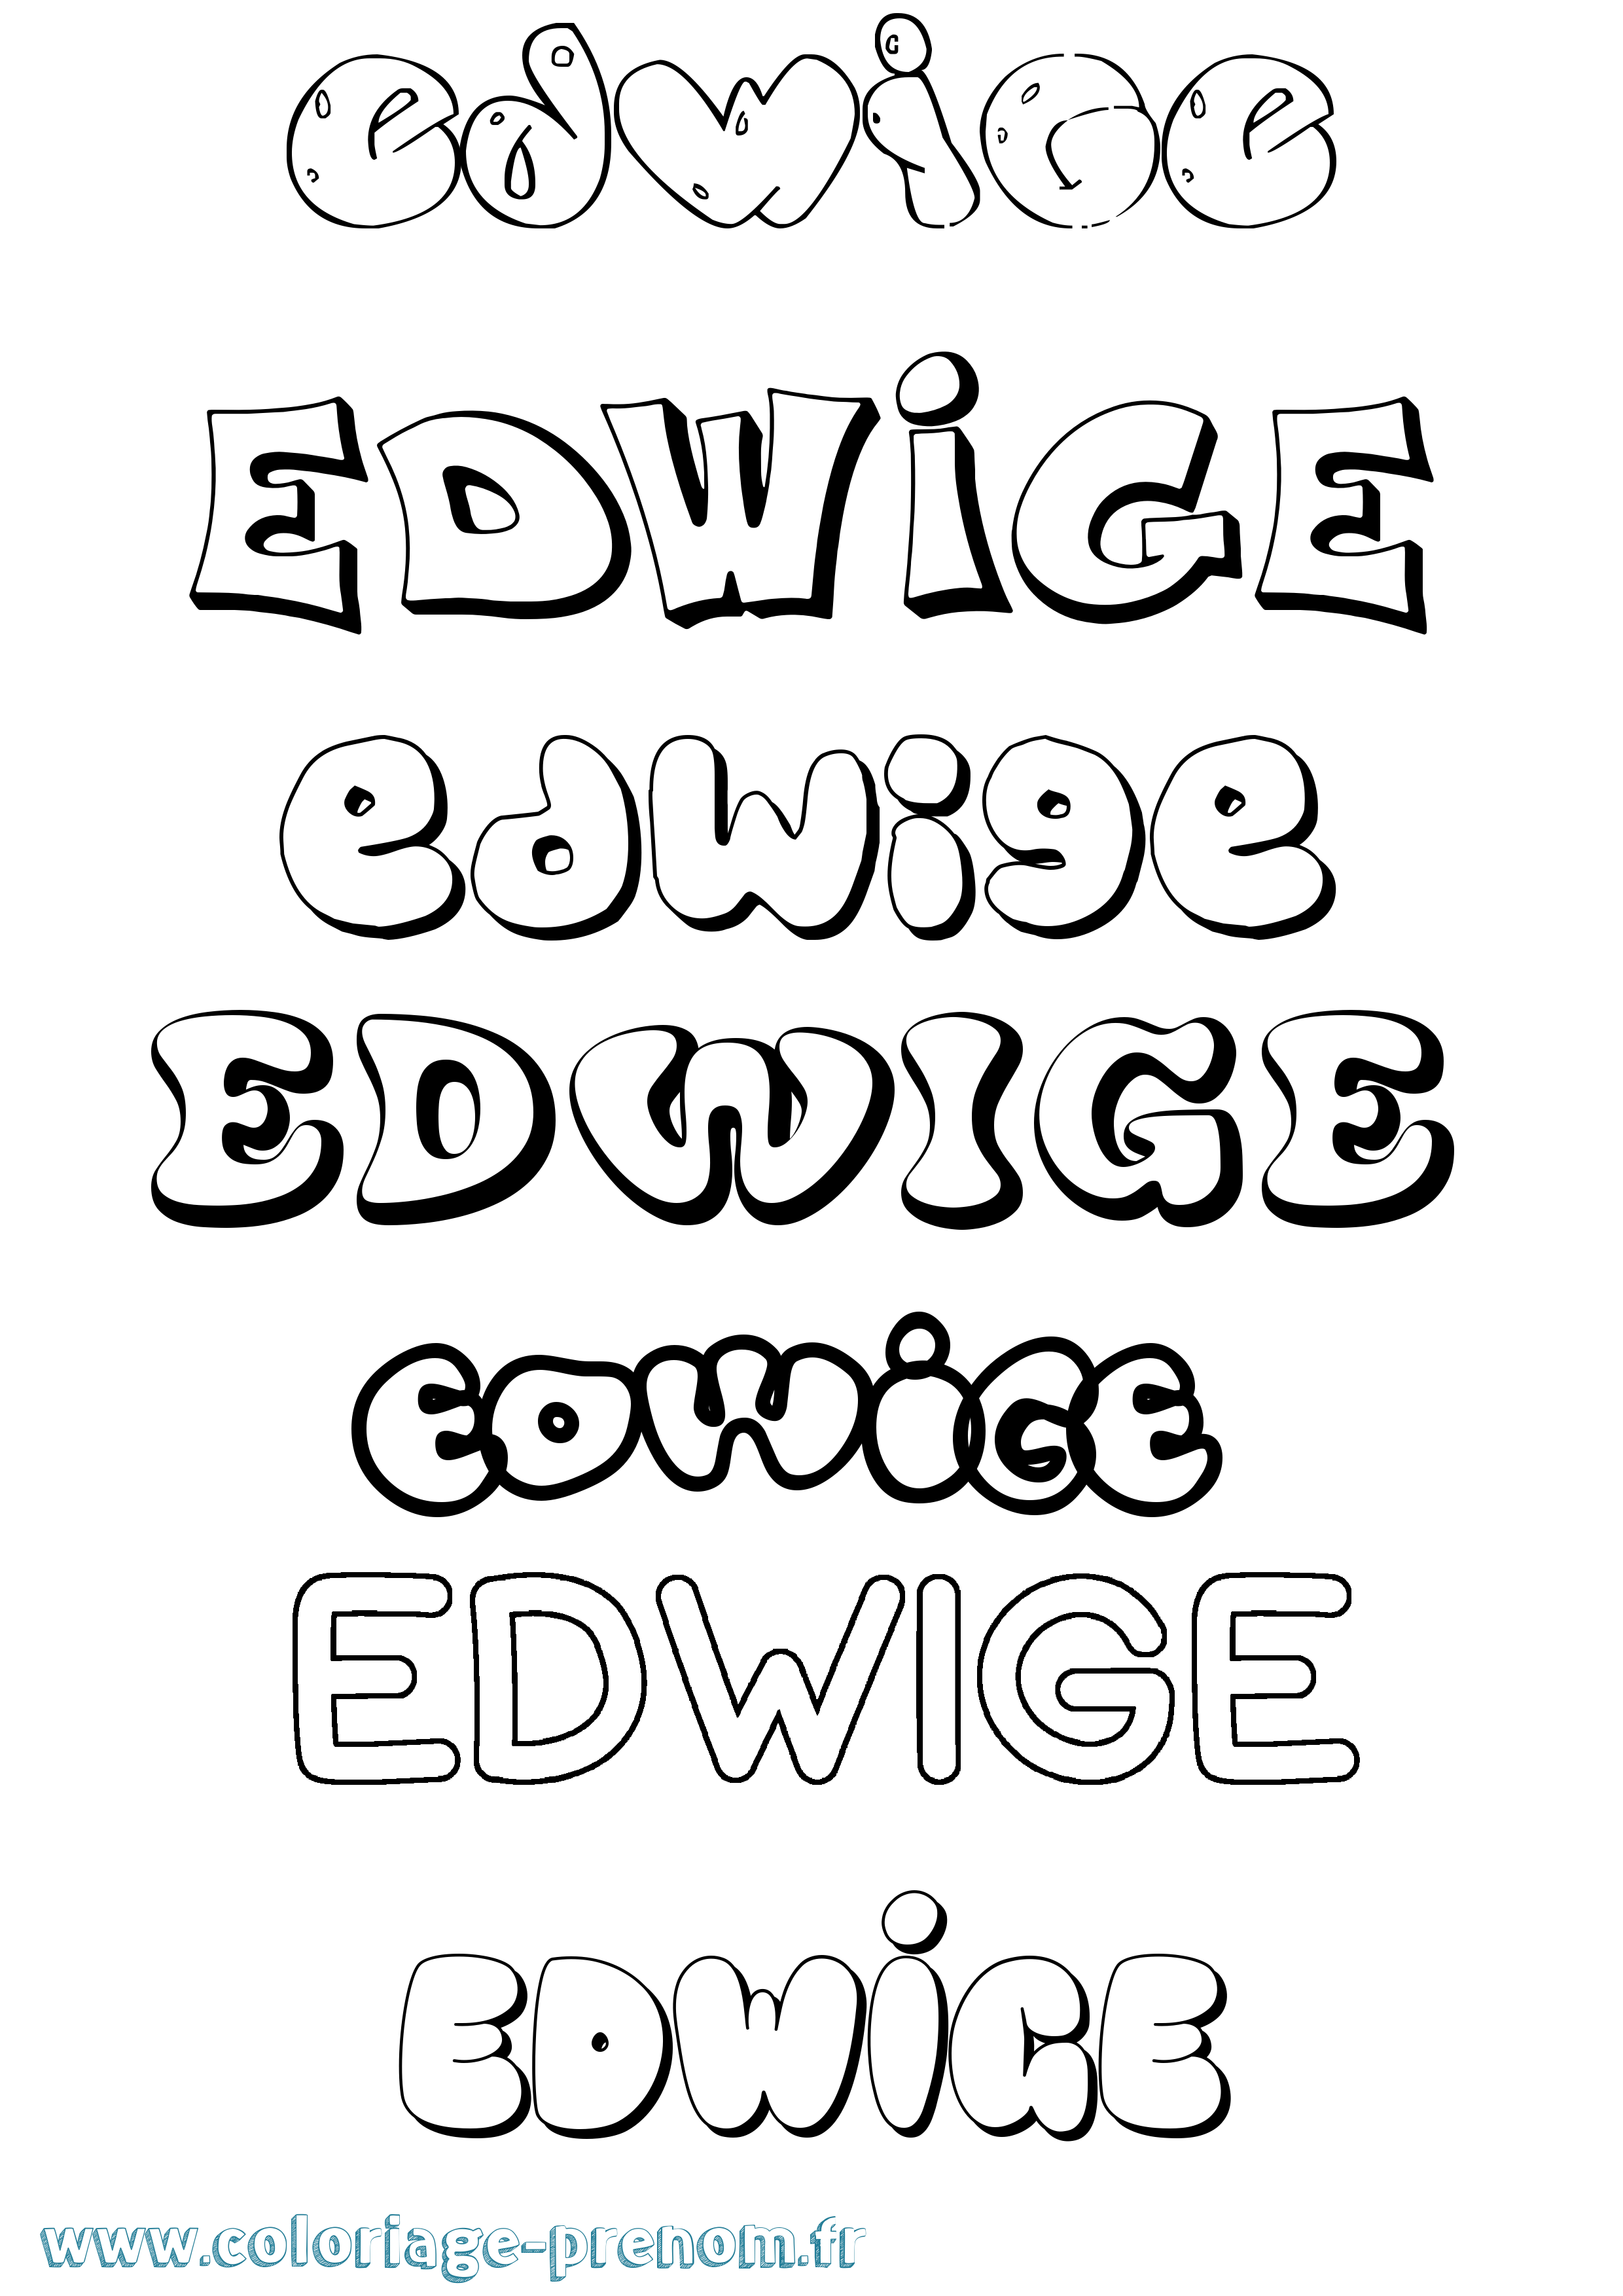 Coloriage prénom Edwige Bubble